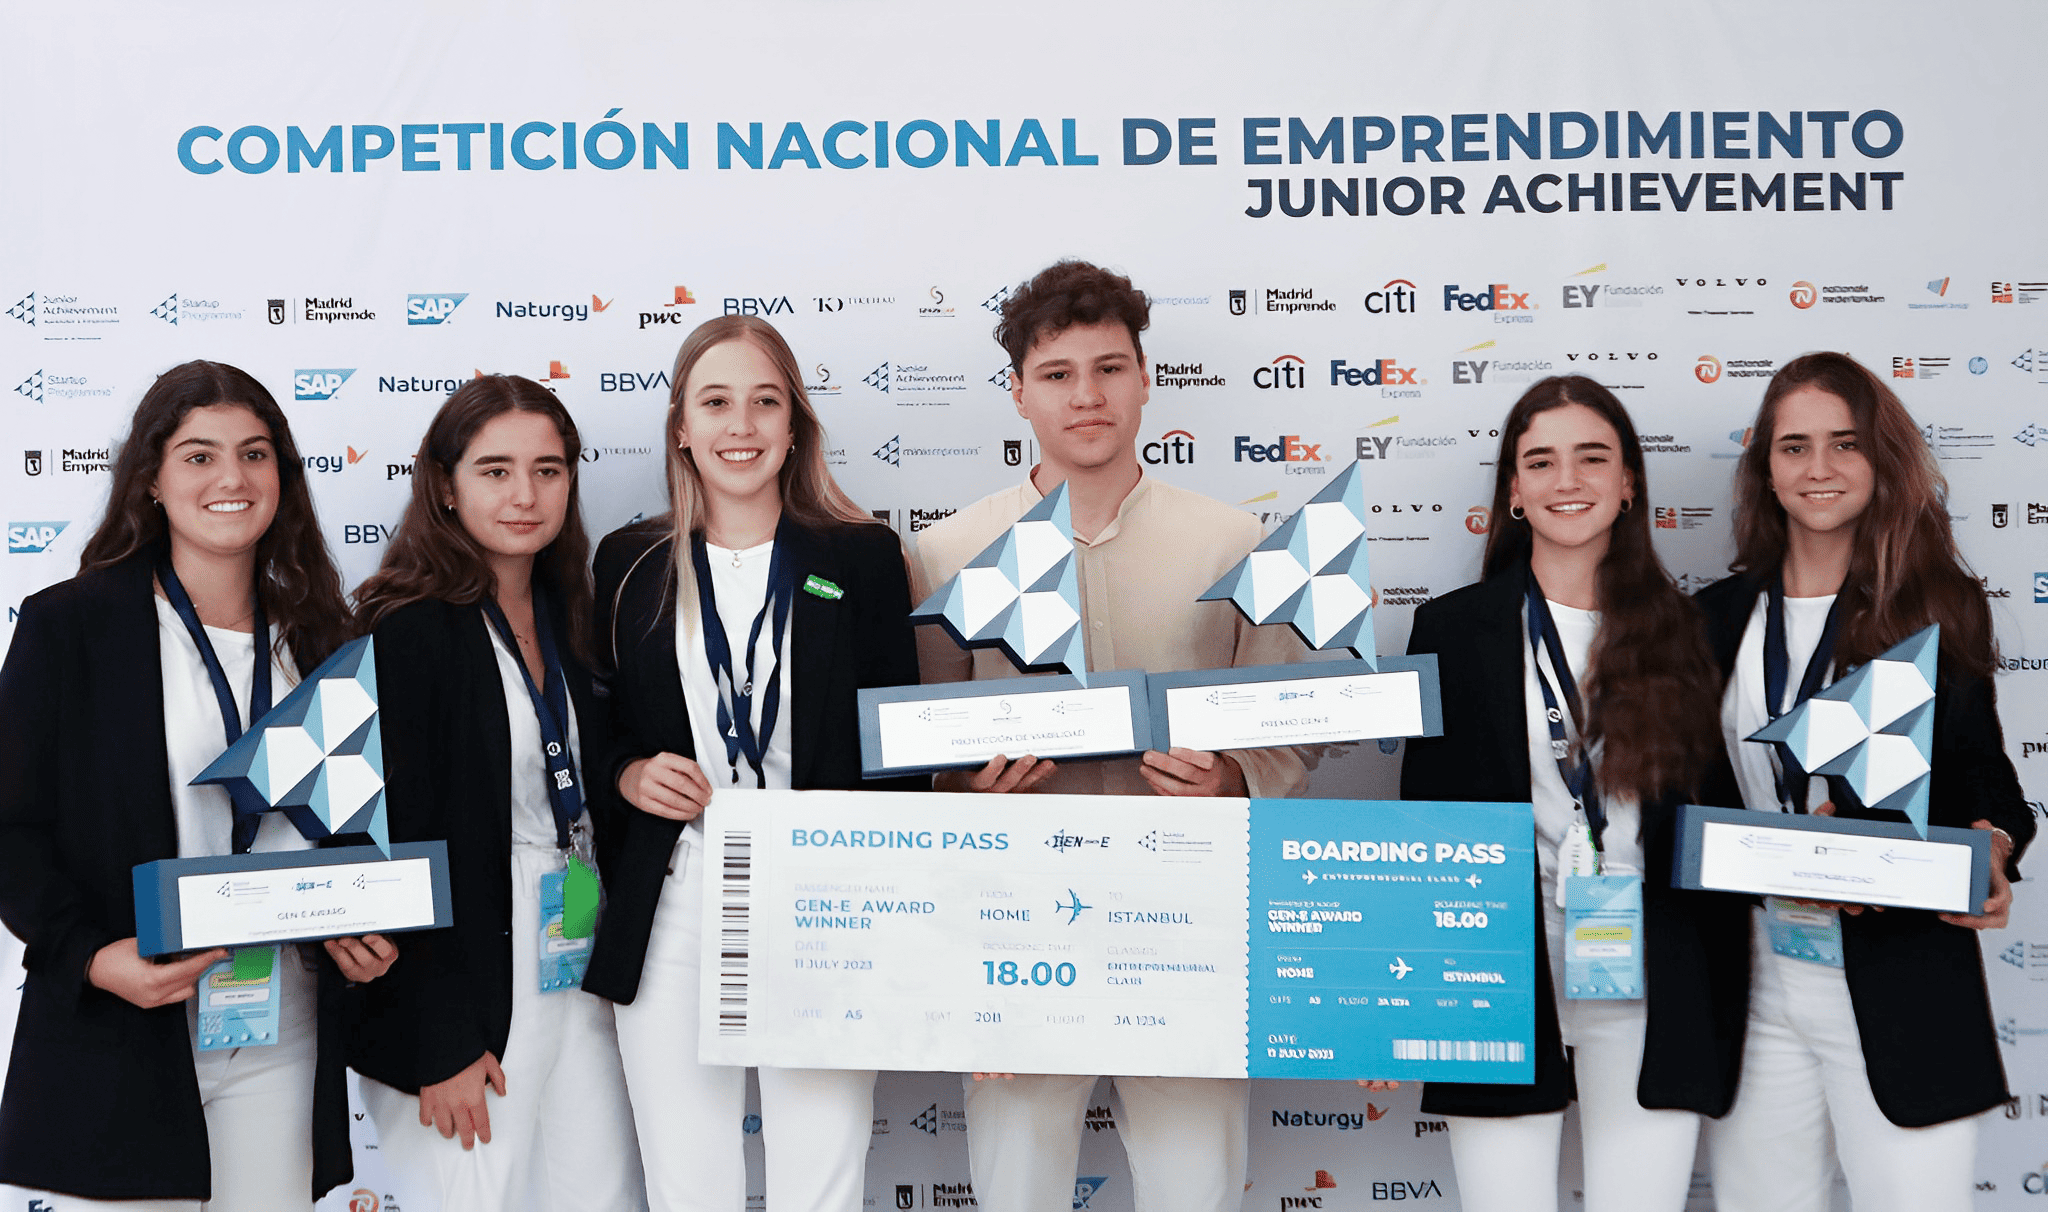 Eco Refill y FindIt ganan la Competición Nacional de Emprendimiento de Fundación Junior Achievement y representarán a España en la Competición europea Gen-E